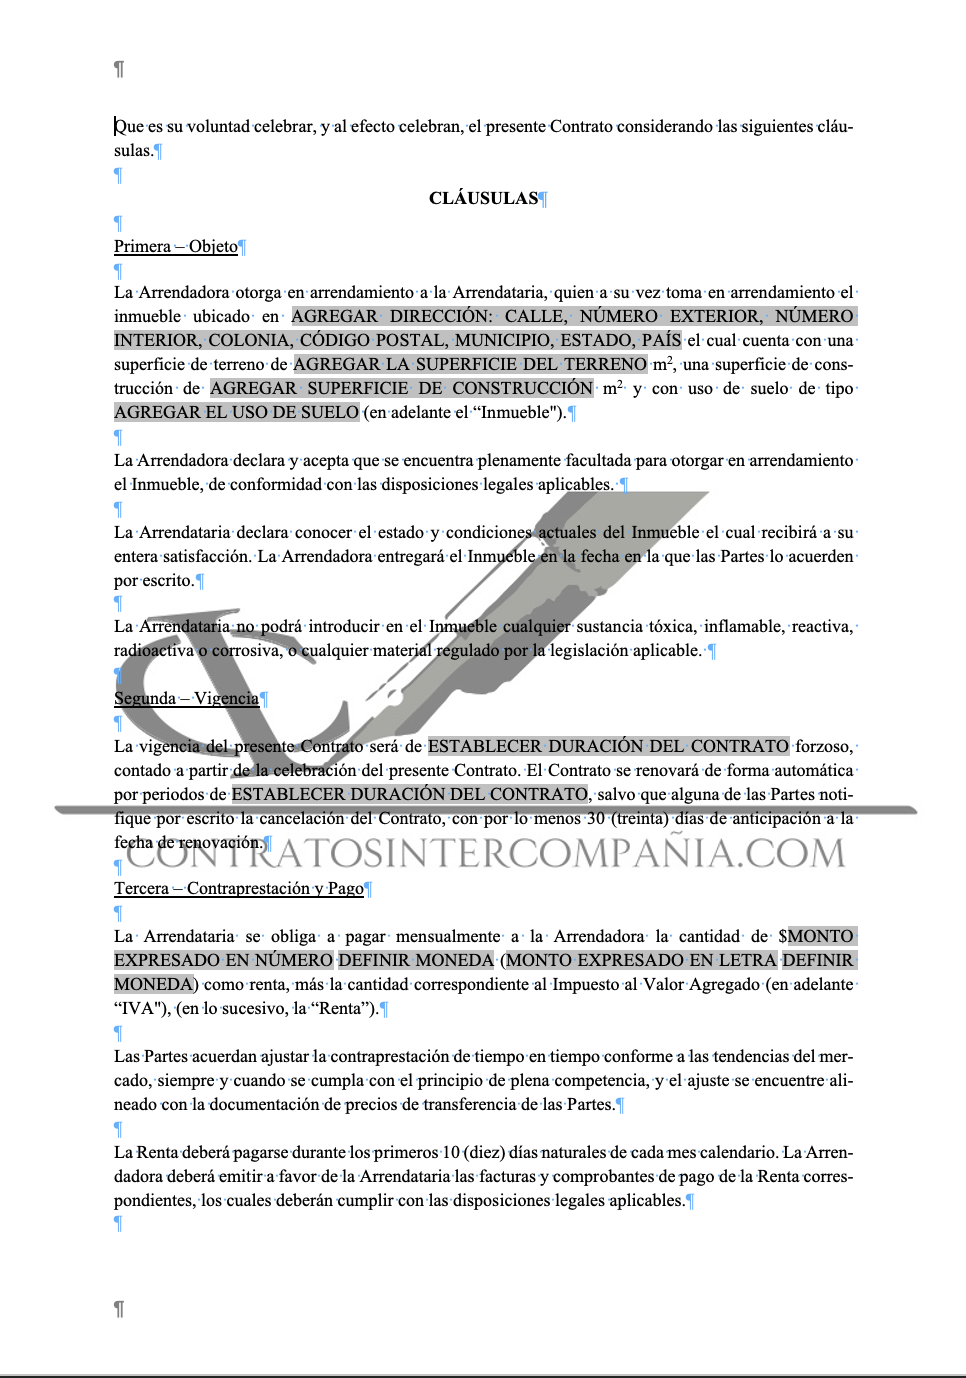 Contrato de arrendamiento de inmuebles - Contratos Intercompañía